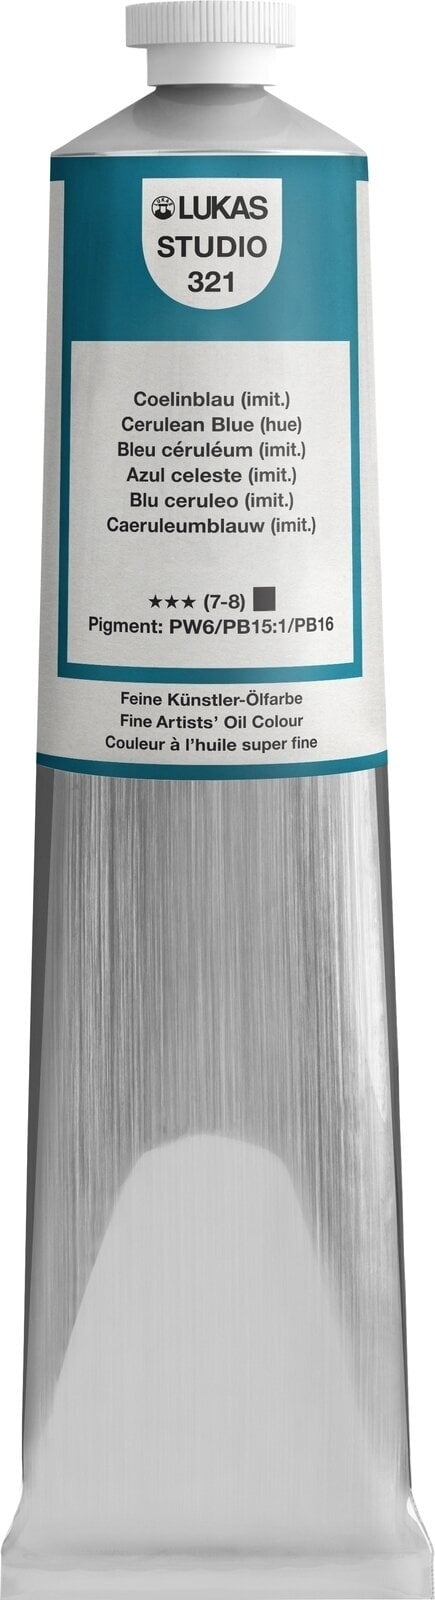 Olejová barva Lukas Studio Oil Paint Aluminium Tube Olejová barva Cerulean Blue Hue 200 ml 1 ks